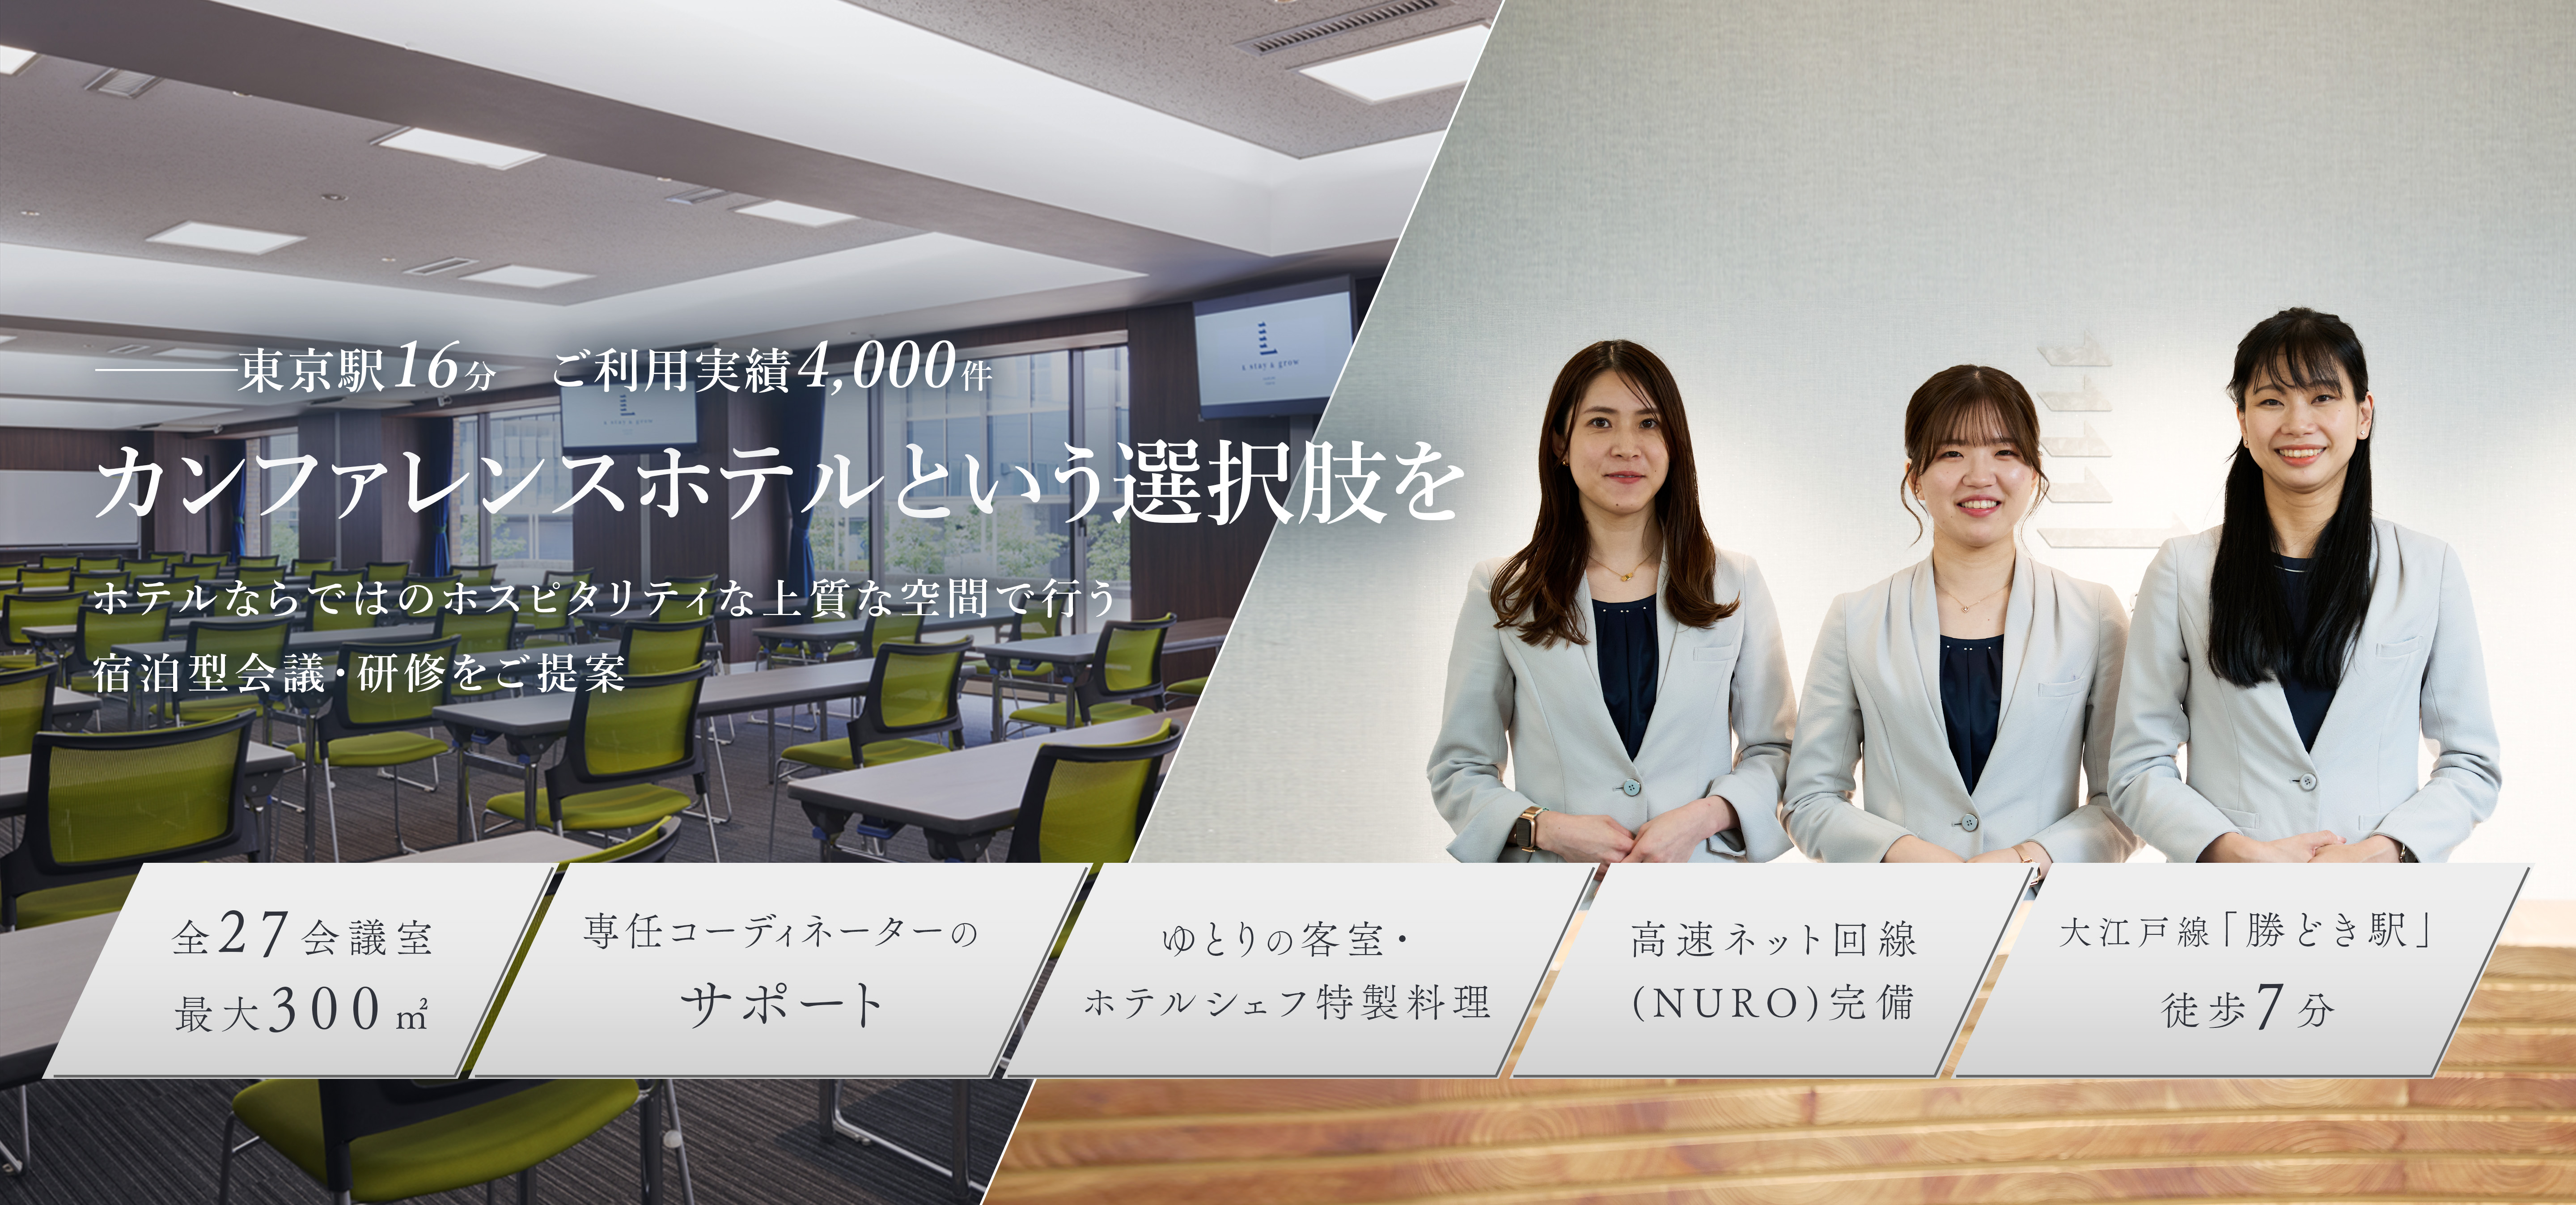 東京駅16分 ご利用実績4,000件 カンファレンスホテルという選択肢を ホテルならではのホスピタリティな上質な空間で行う宿泊型会議・研修をご提案